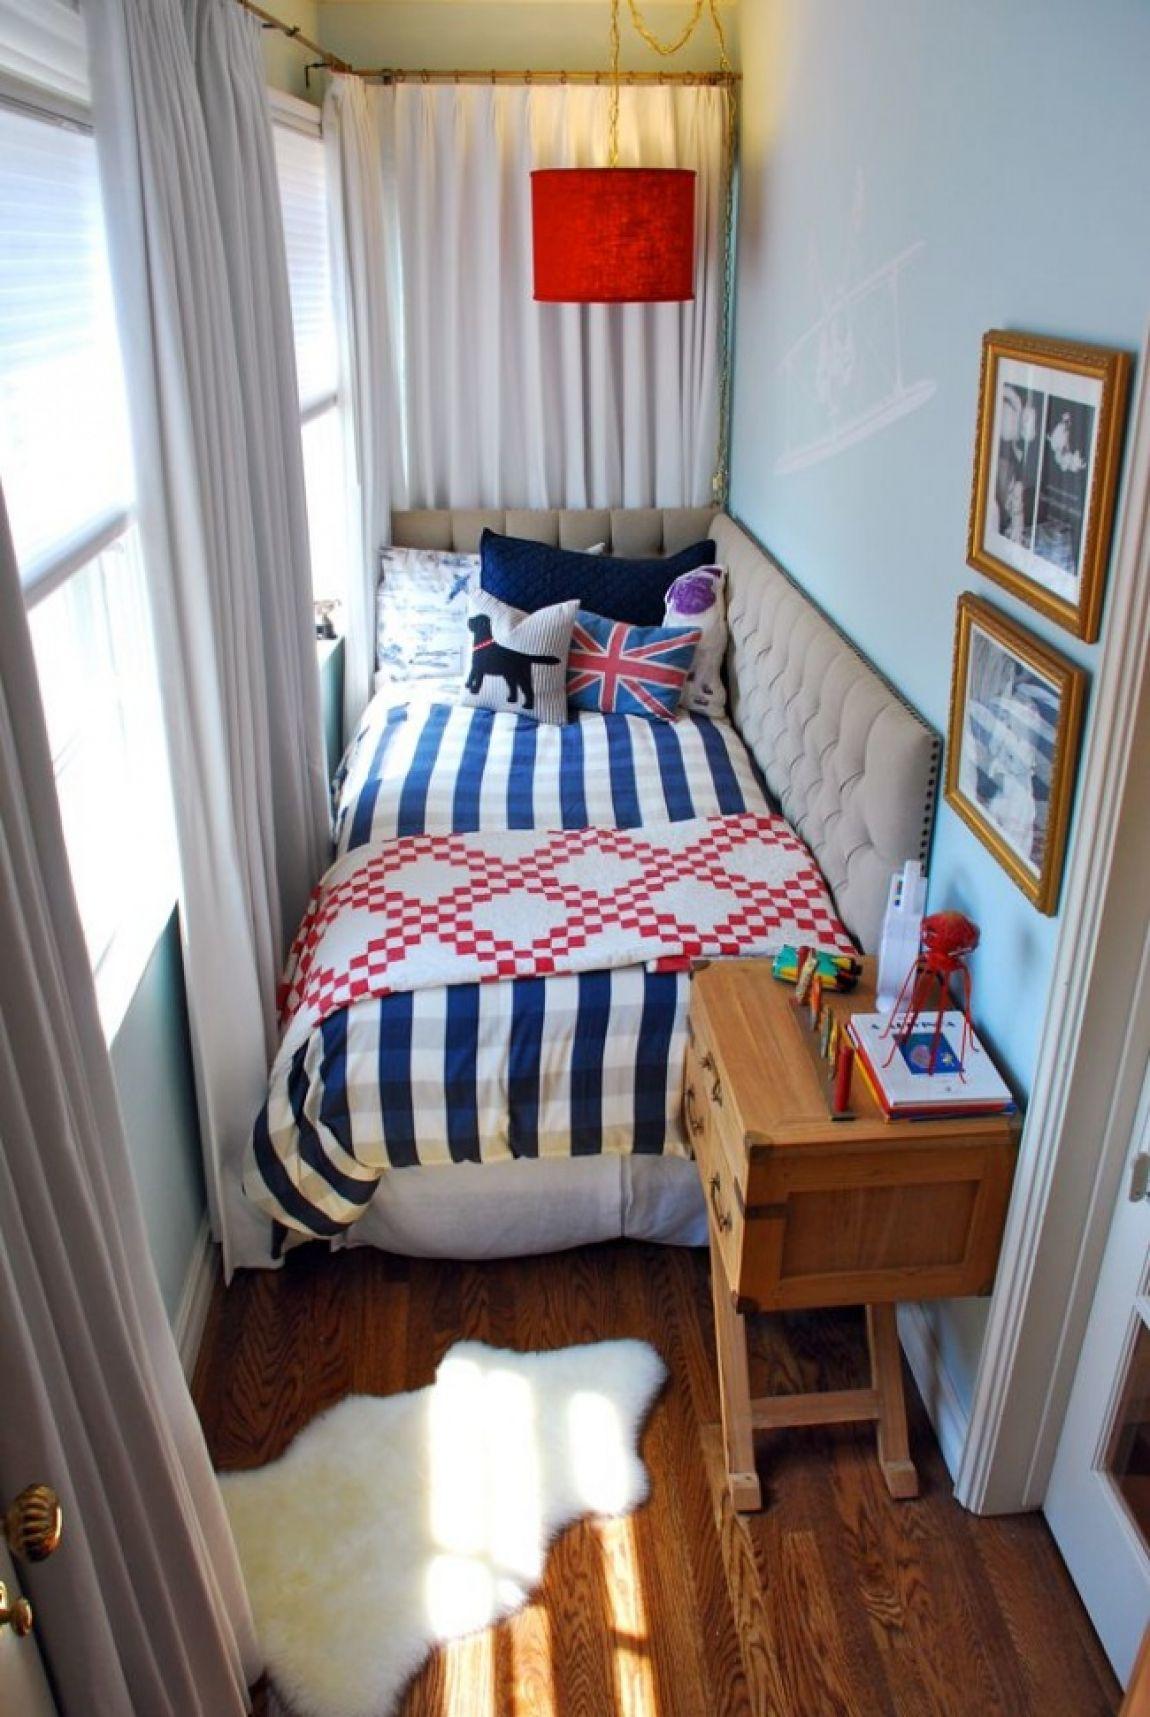 Спальня на балконе –это не только возможность обустроить комнату для отдыха, но и отличный способ сэкономить пространство в квартире